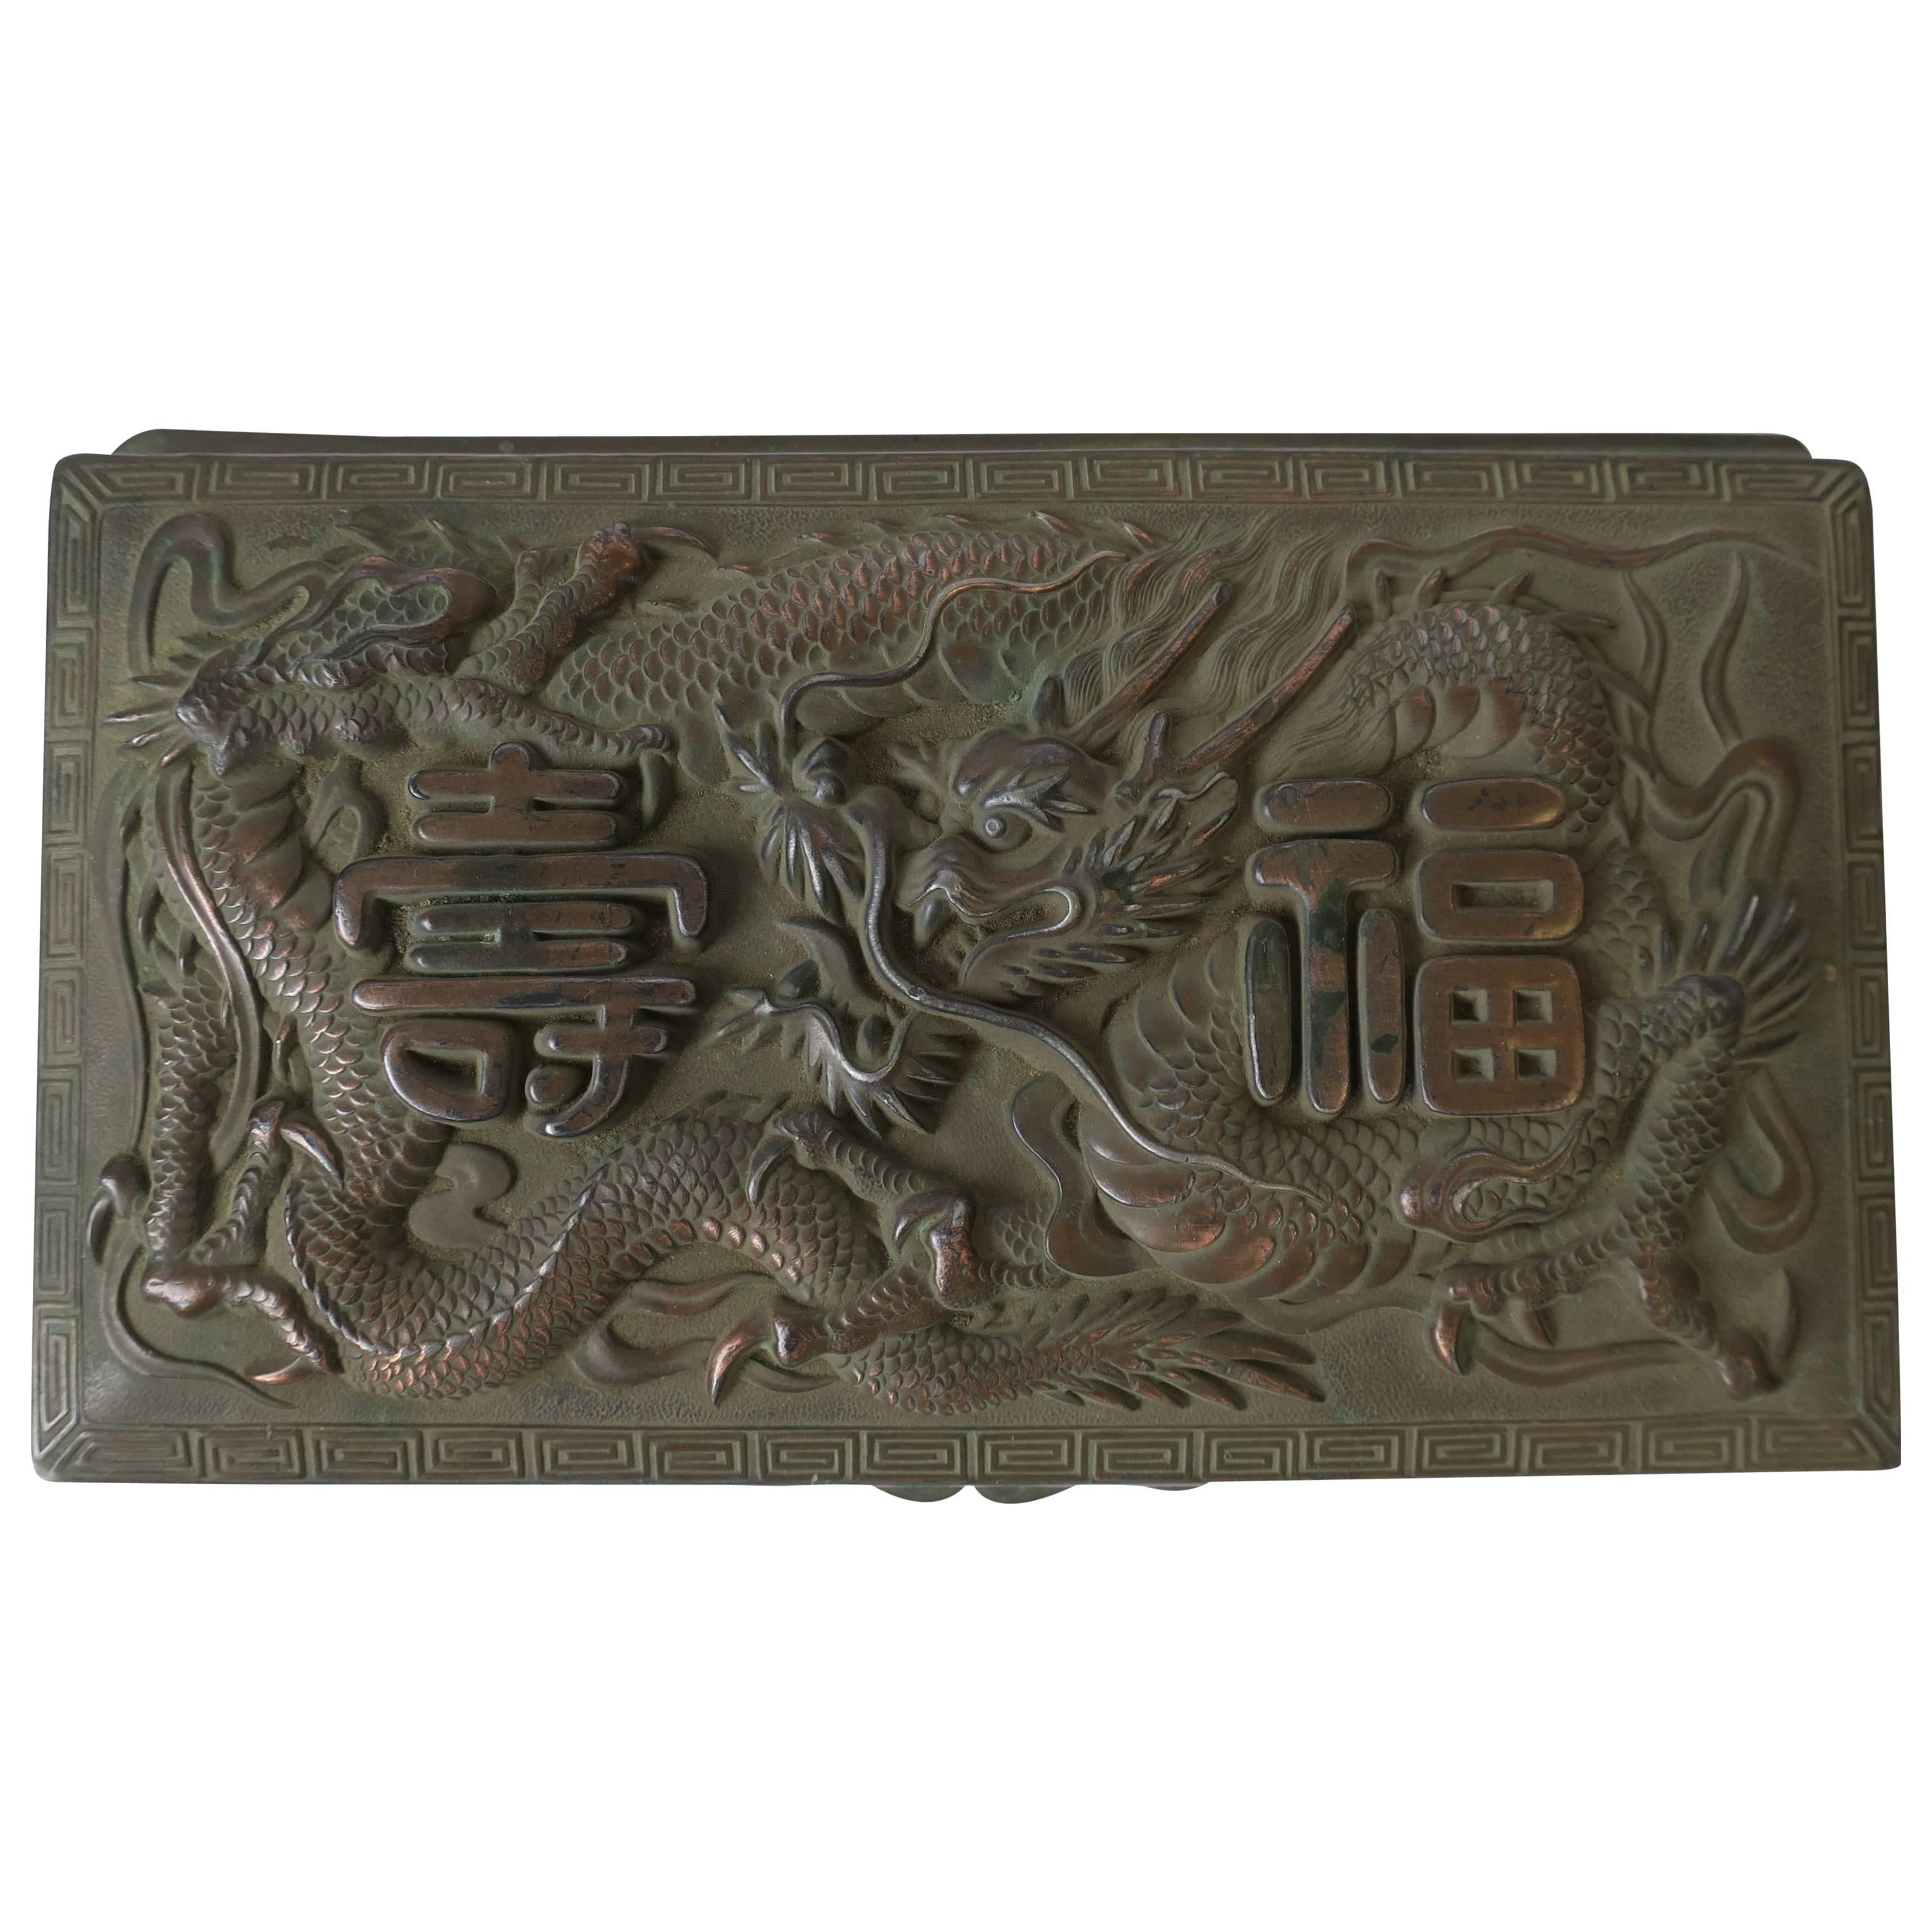 Copper Metal Box with Dragon Design